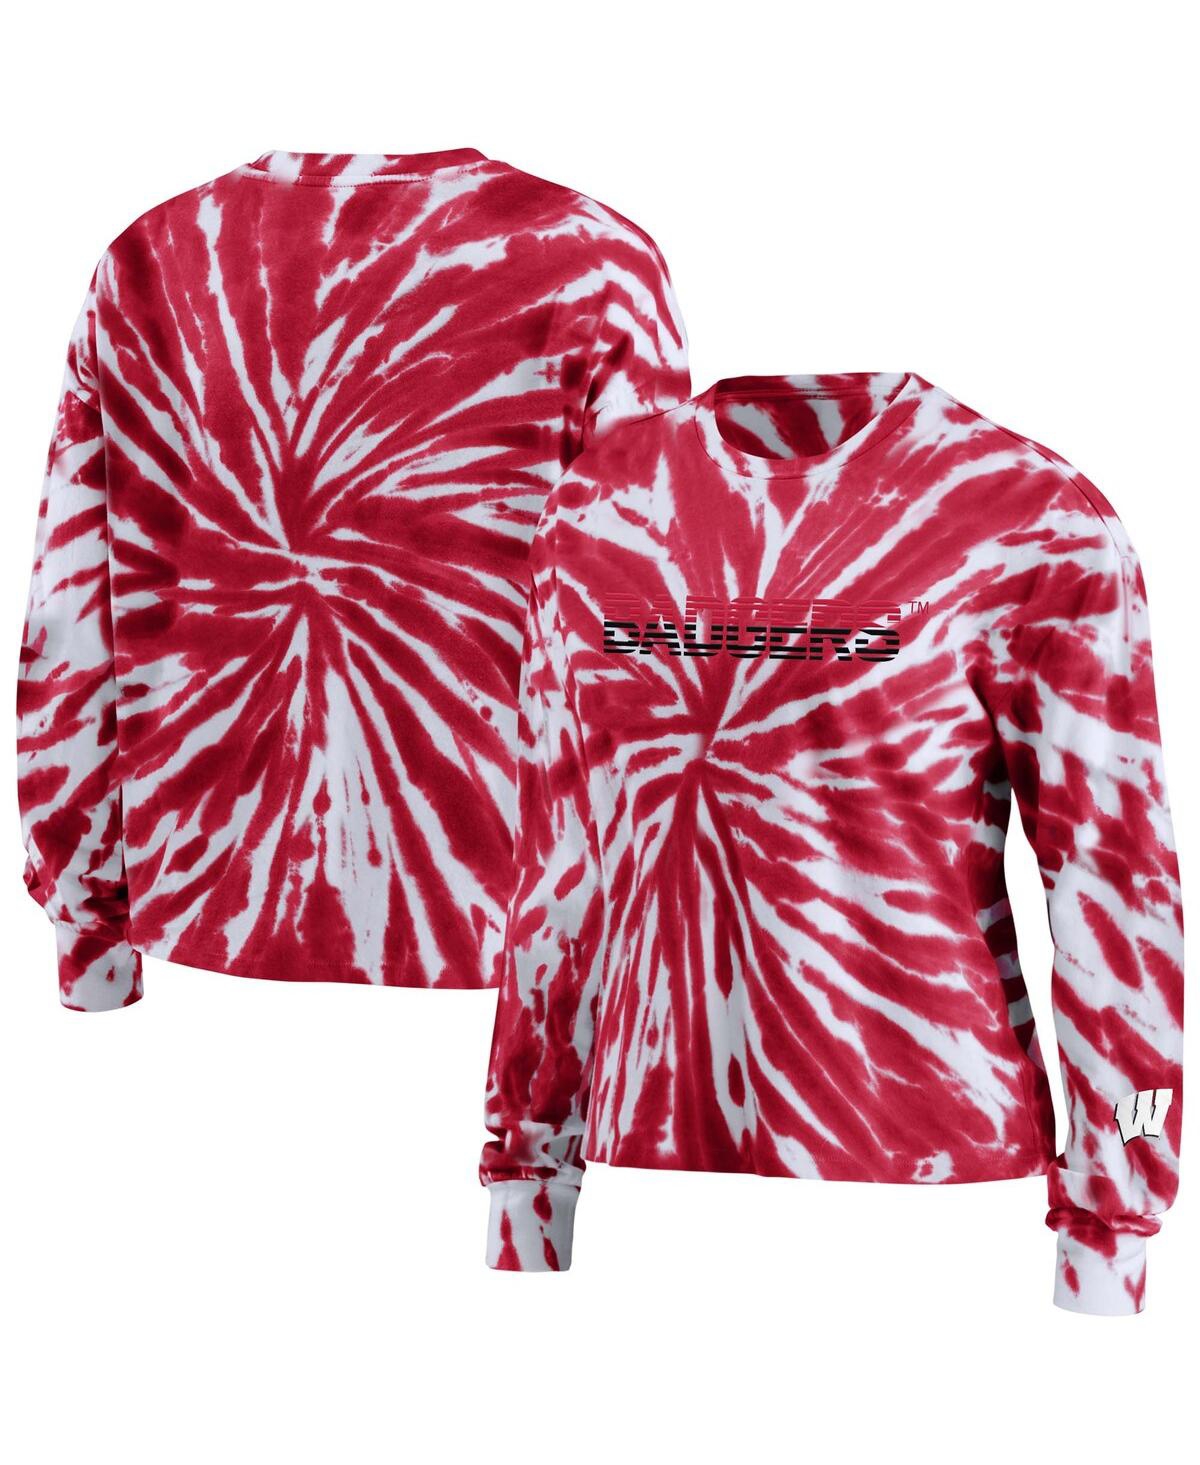 Wear By Erin Andrews Women's  Red Wisconsin Badgers Tie-dye Long Sleeve T-shirt